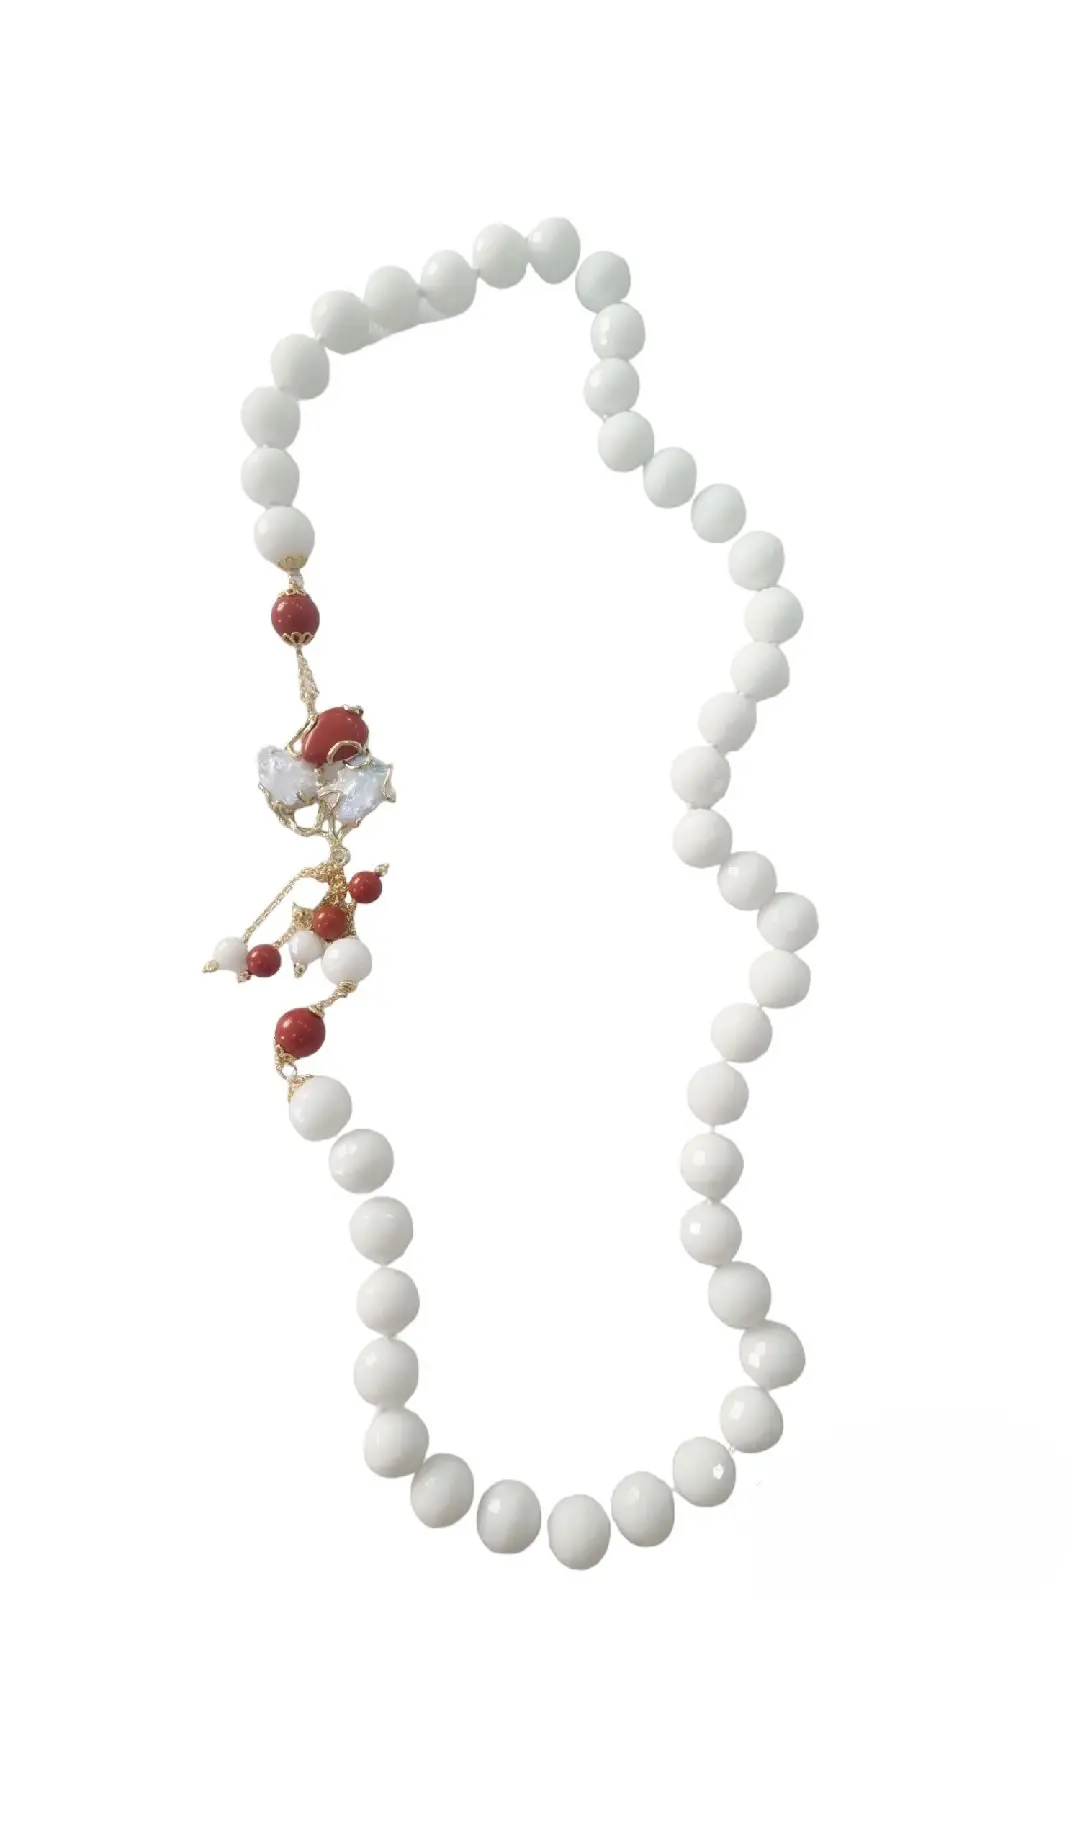 Collana realizzata con agata bianca, perle di maiorca e perle di fiume. elementi dorati in ottone. Lunghezza 80cm